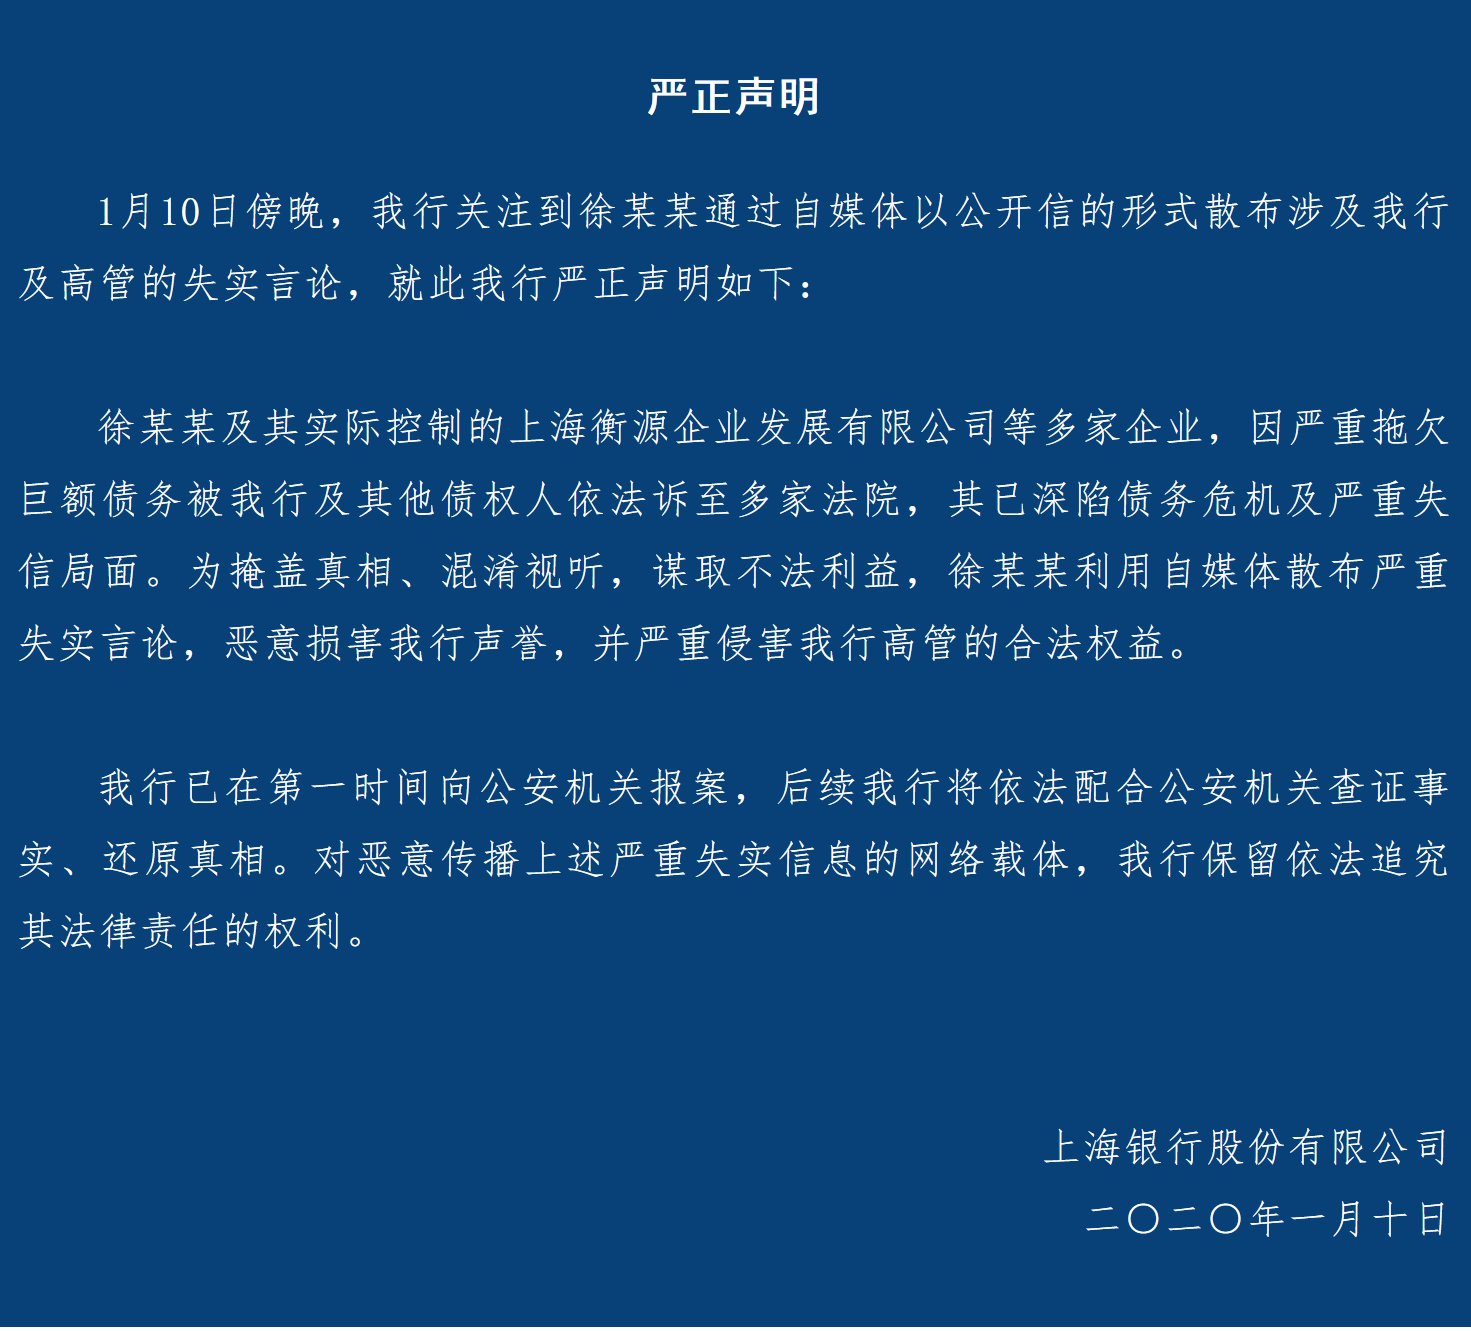 上海衡源企业公司地址